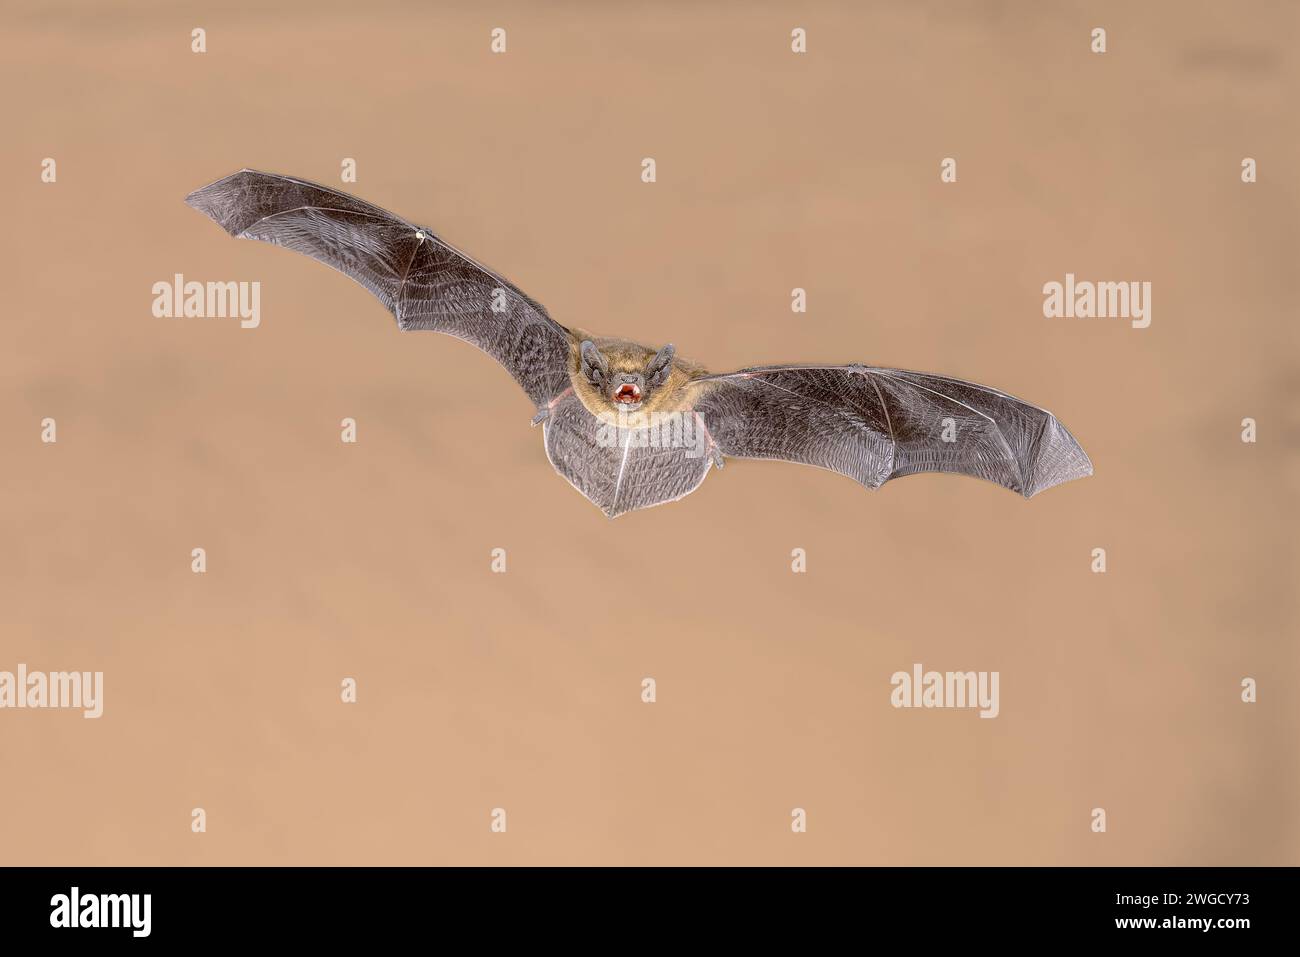 Flying Common Pipistrelle bat (Pipistrellus pipistrellus) ist ein kleiner Pipistrelle-Mikrobat, dessen sehr große Reichweite sich über den größten Teil Europas im Norden erstreckt Stockfoto